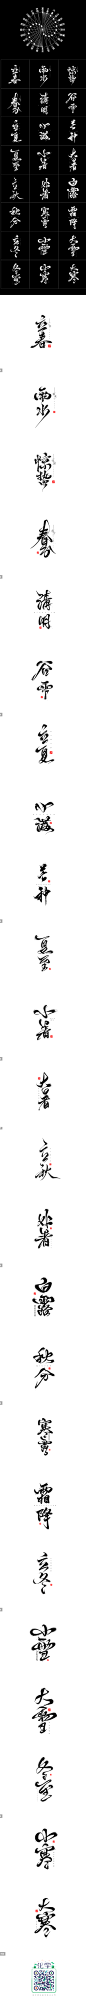 手写体<二十四气节>_字体传奇网-中国首个字体品牌设计师交流网 #字体#